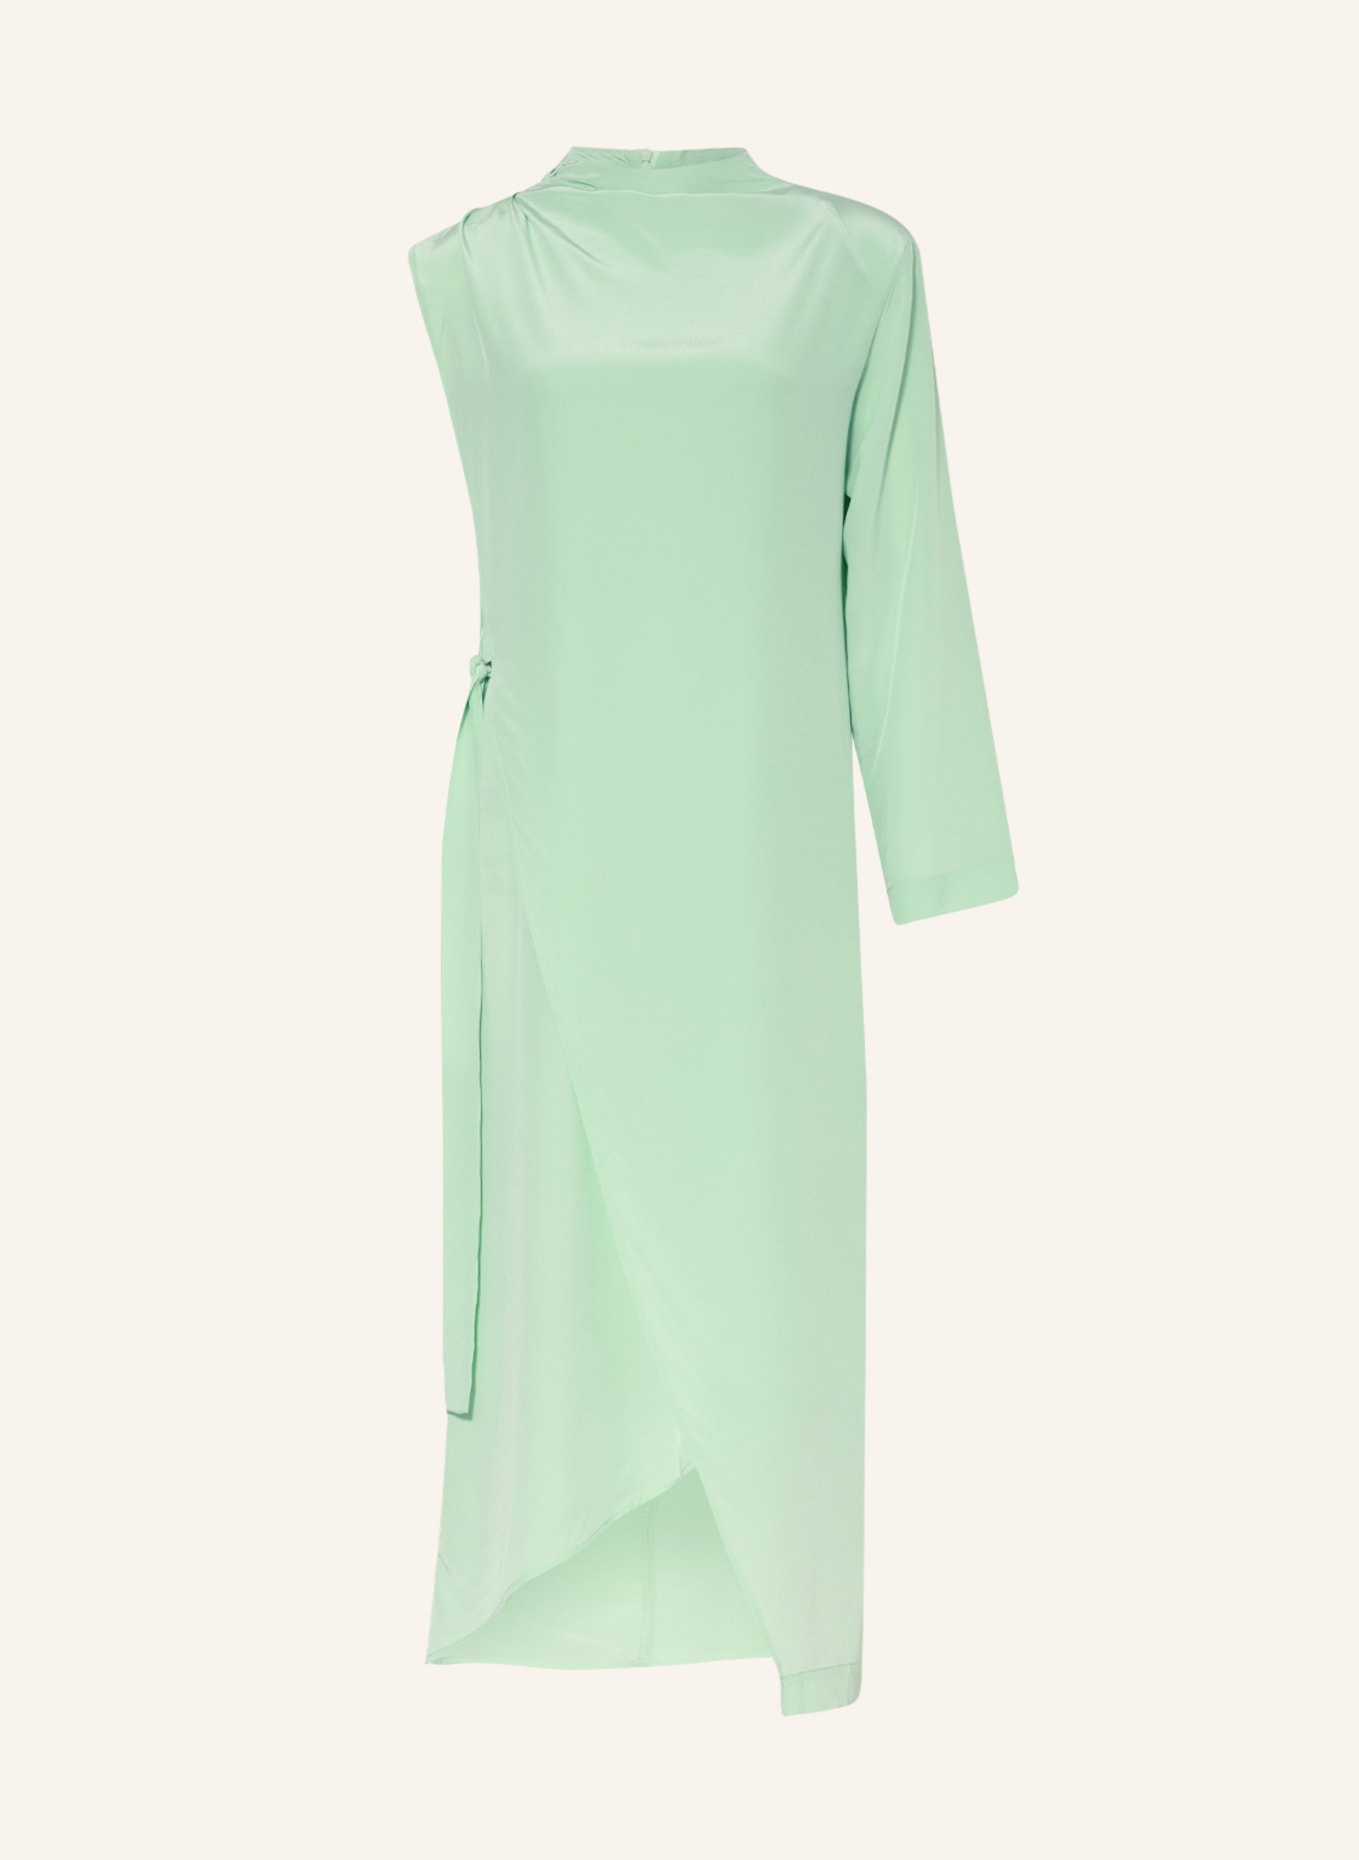 ENVELOPE 1976 One-shoulder dress made of silk, Color: LIGHT GREEN (Image 1)